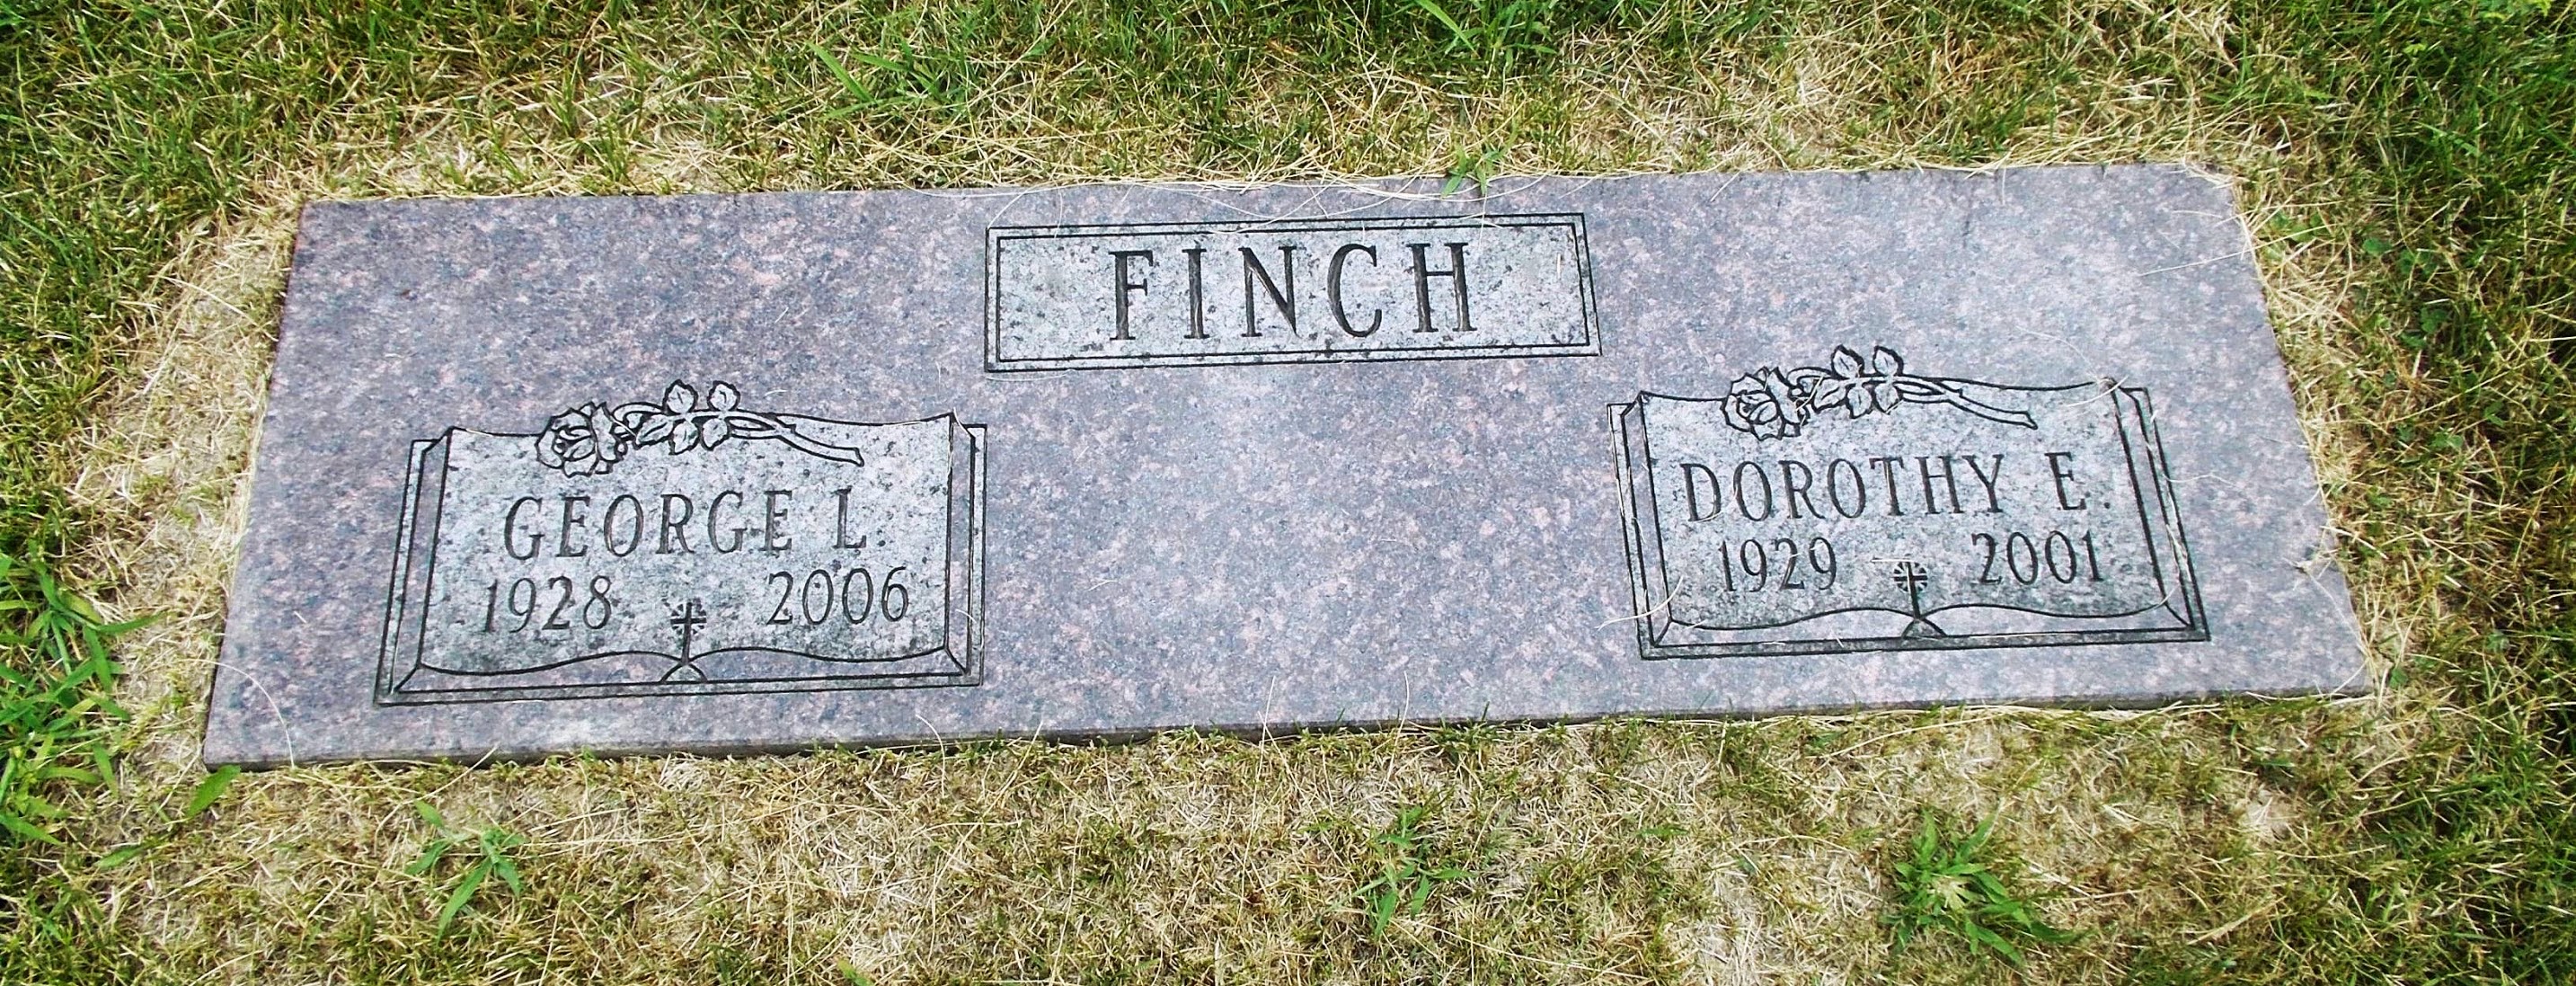 George L Finch